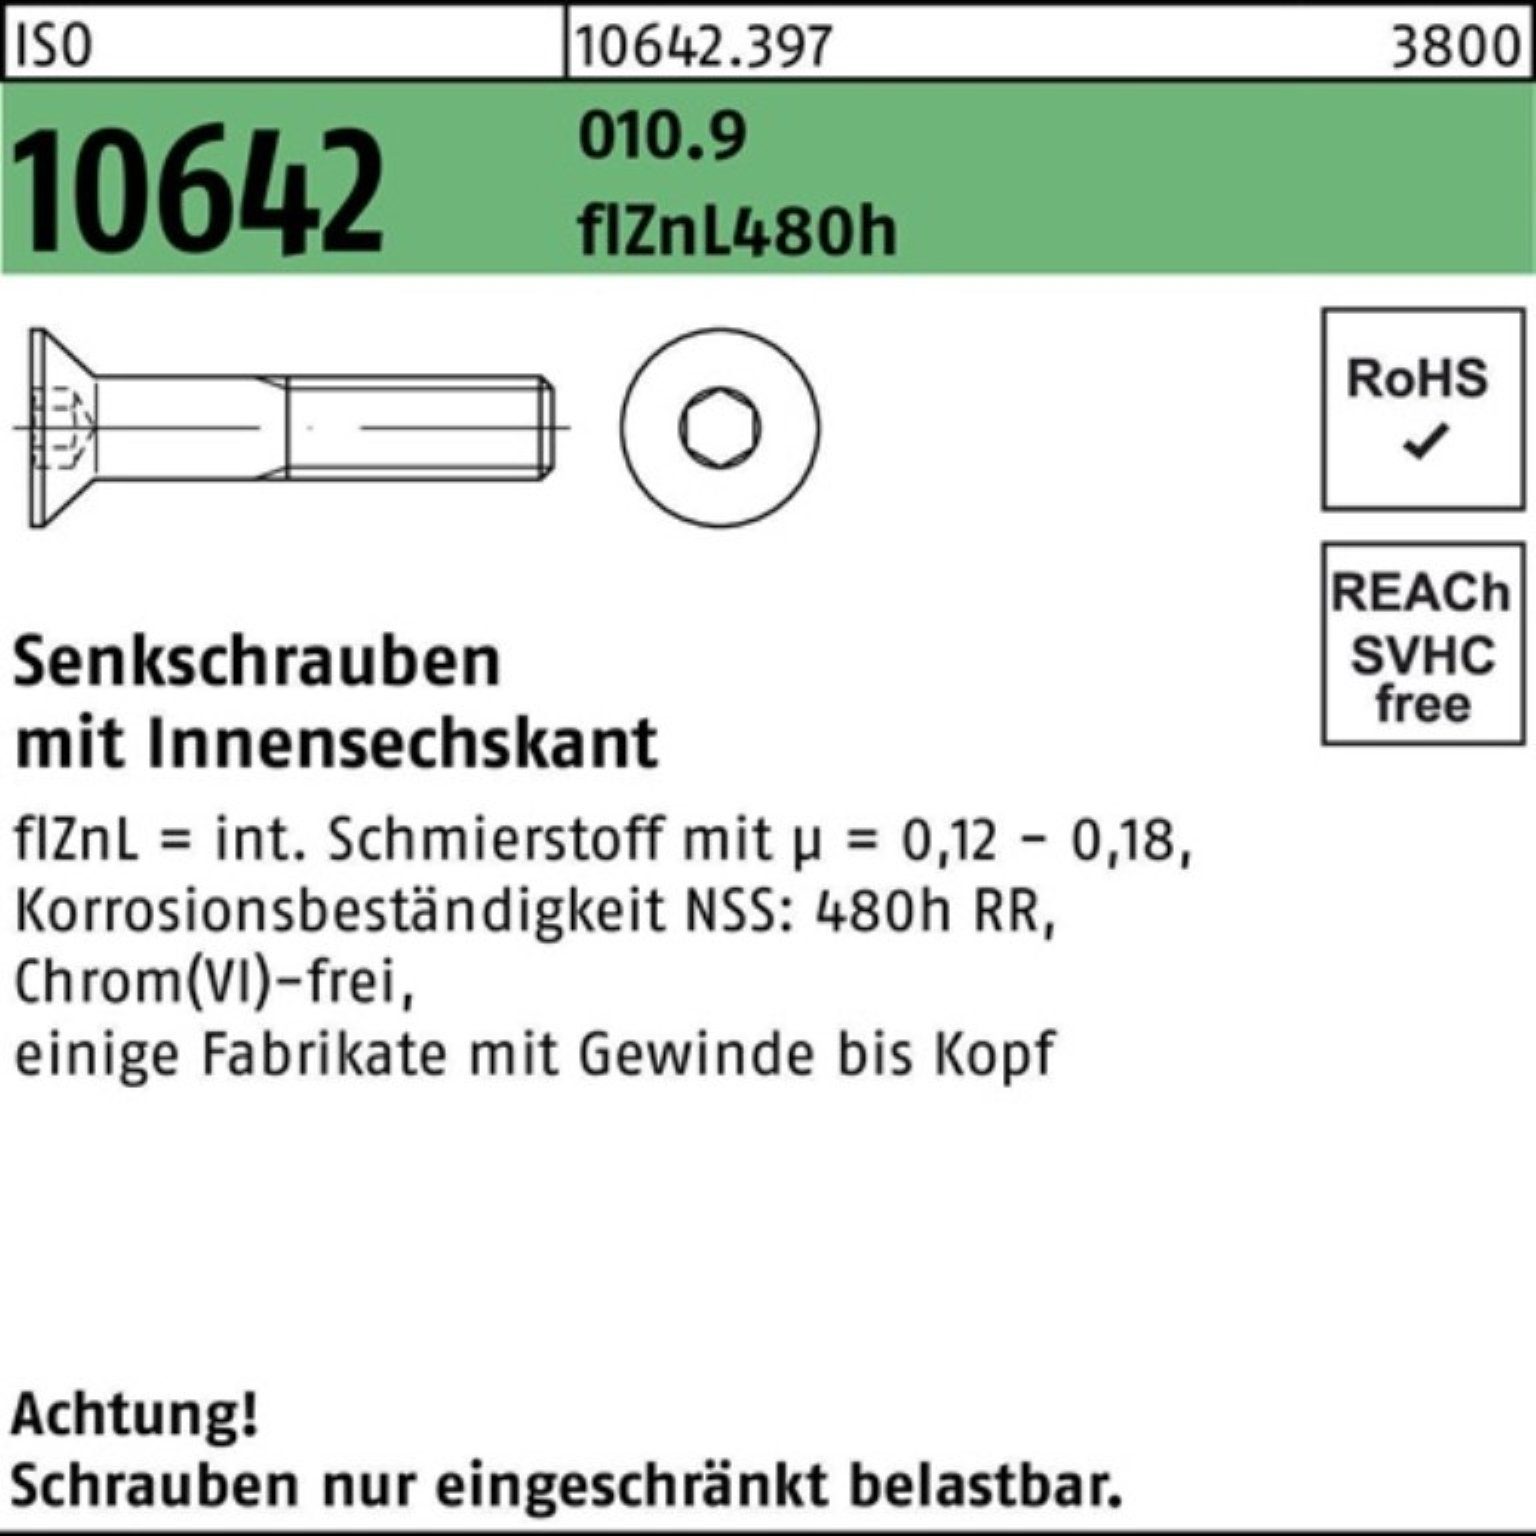 Reyher Senkschraube 100er Pack Senkschraube ISO 10642 Innen-6kt M16x35 010.9 flZnL 480h zi